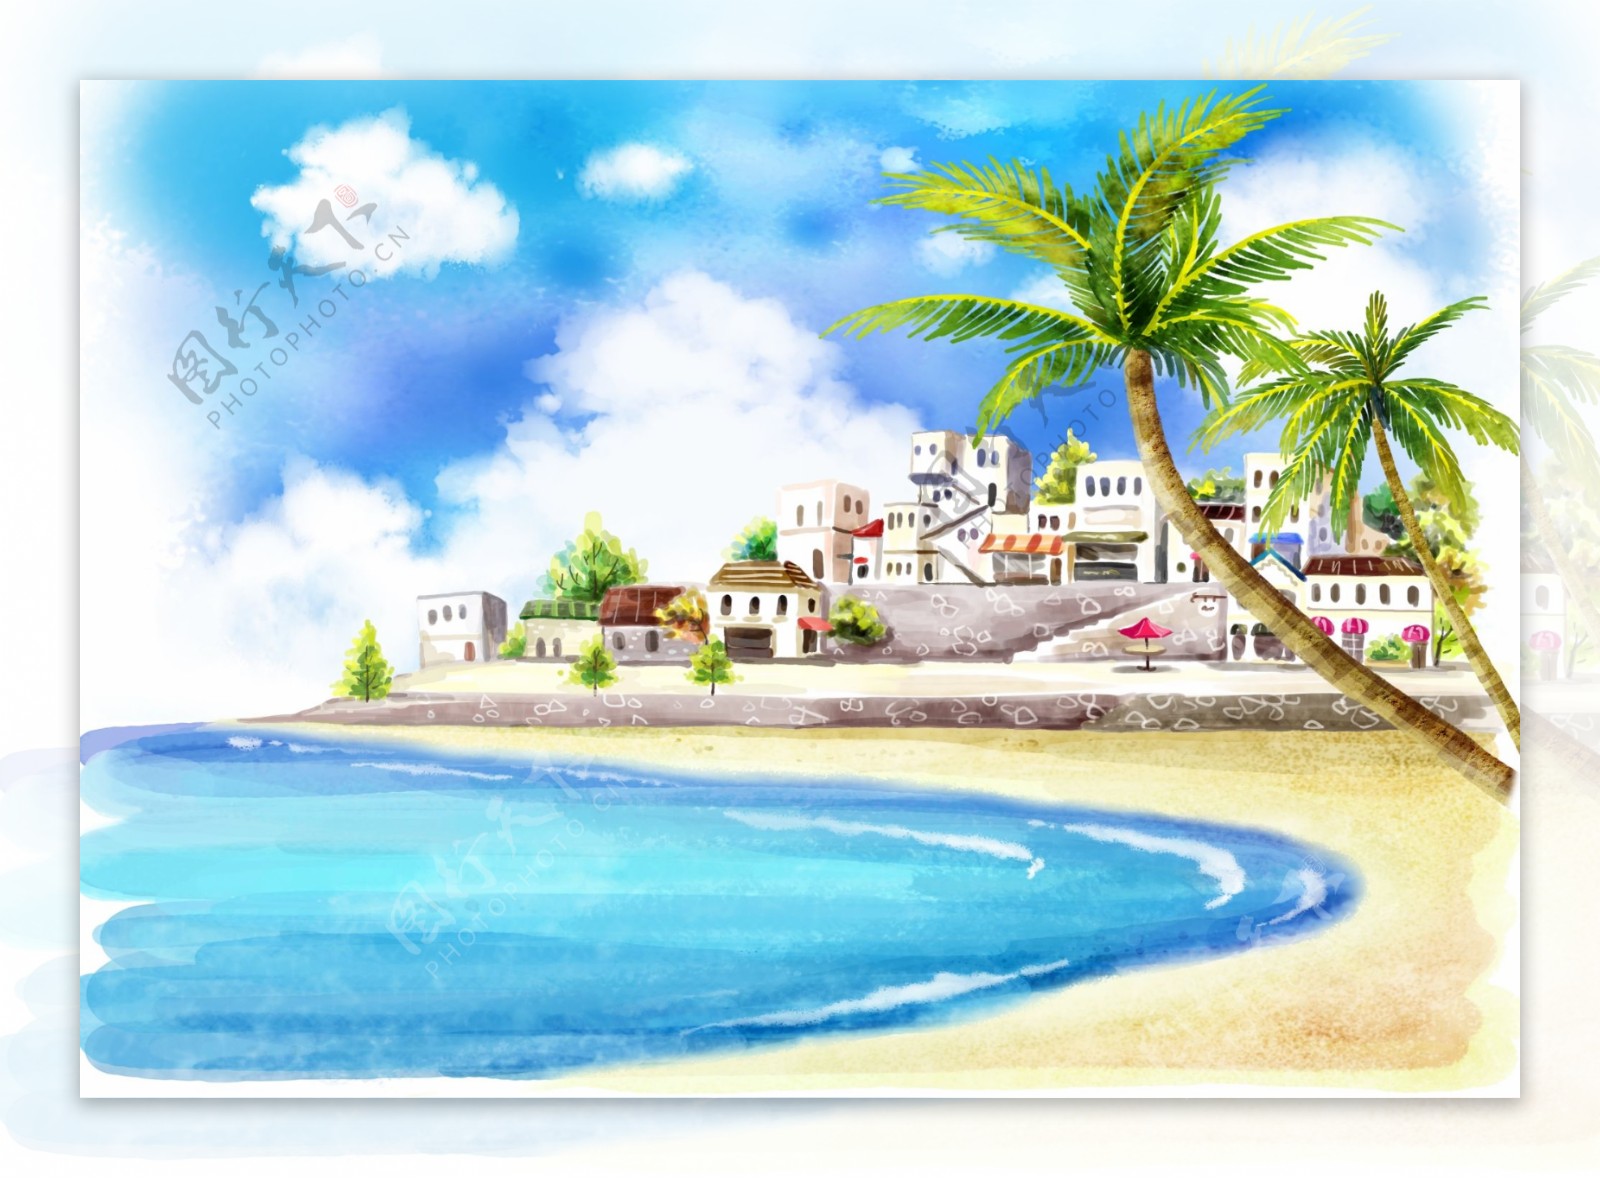 清凉夏日沙滩风景插画图片